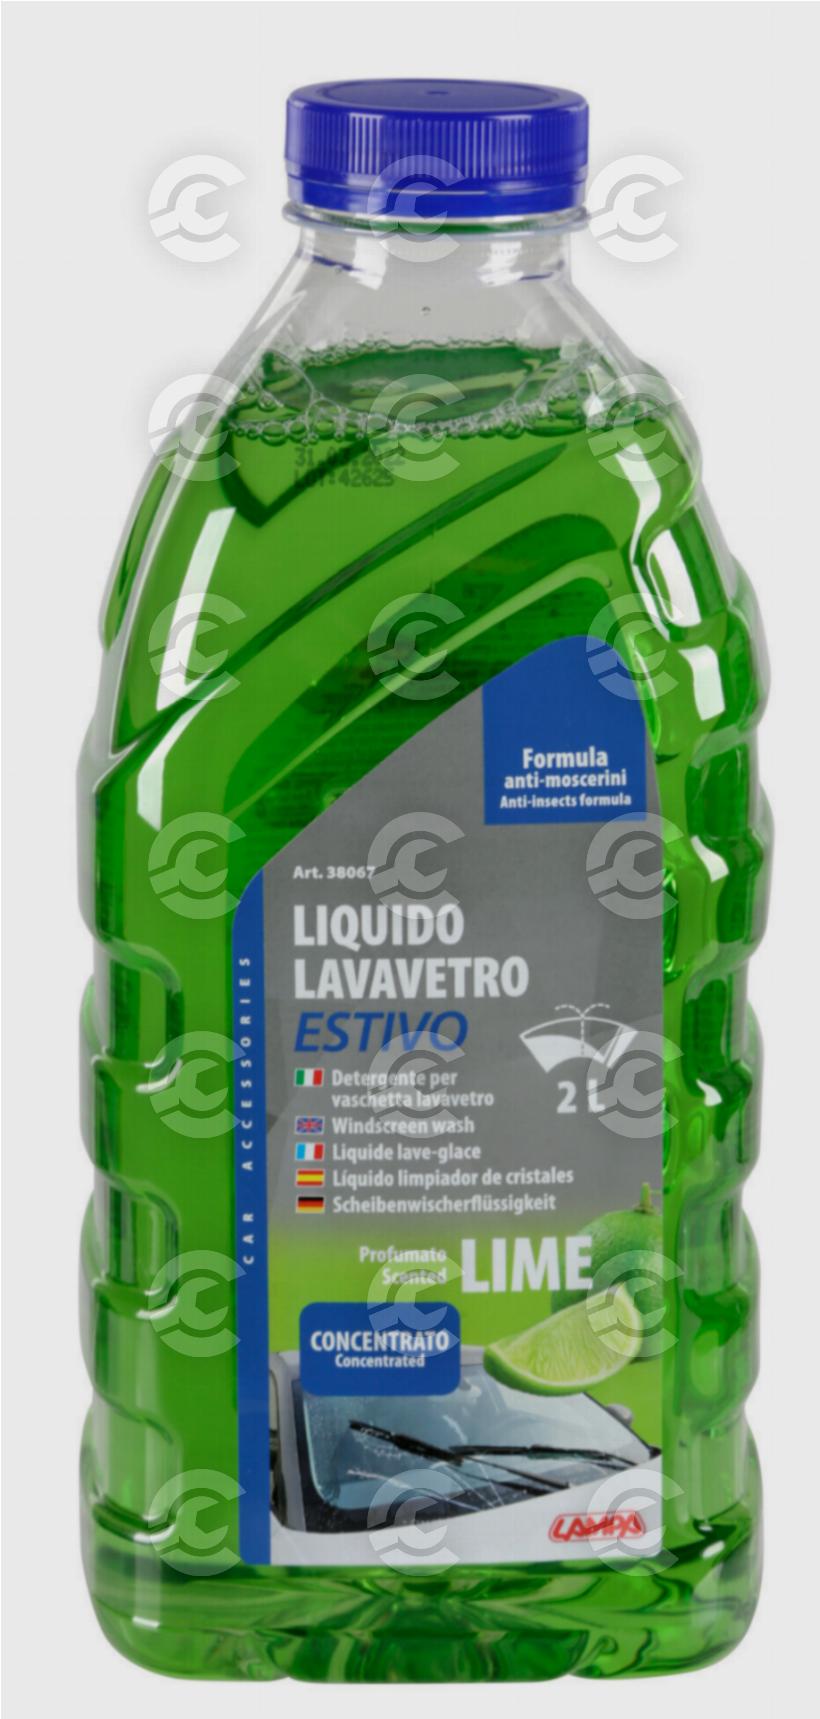 Liquido lavavetro estivo, concentrato - 2000 ml